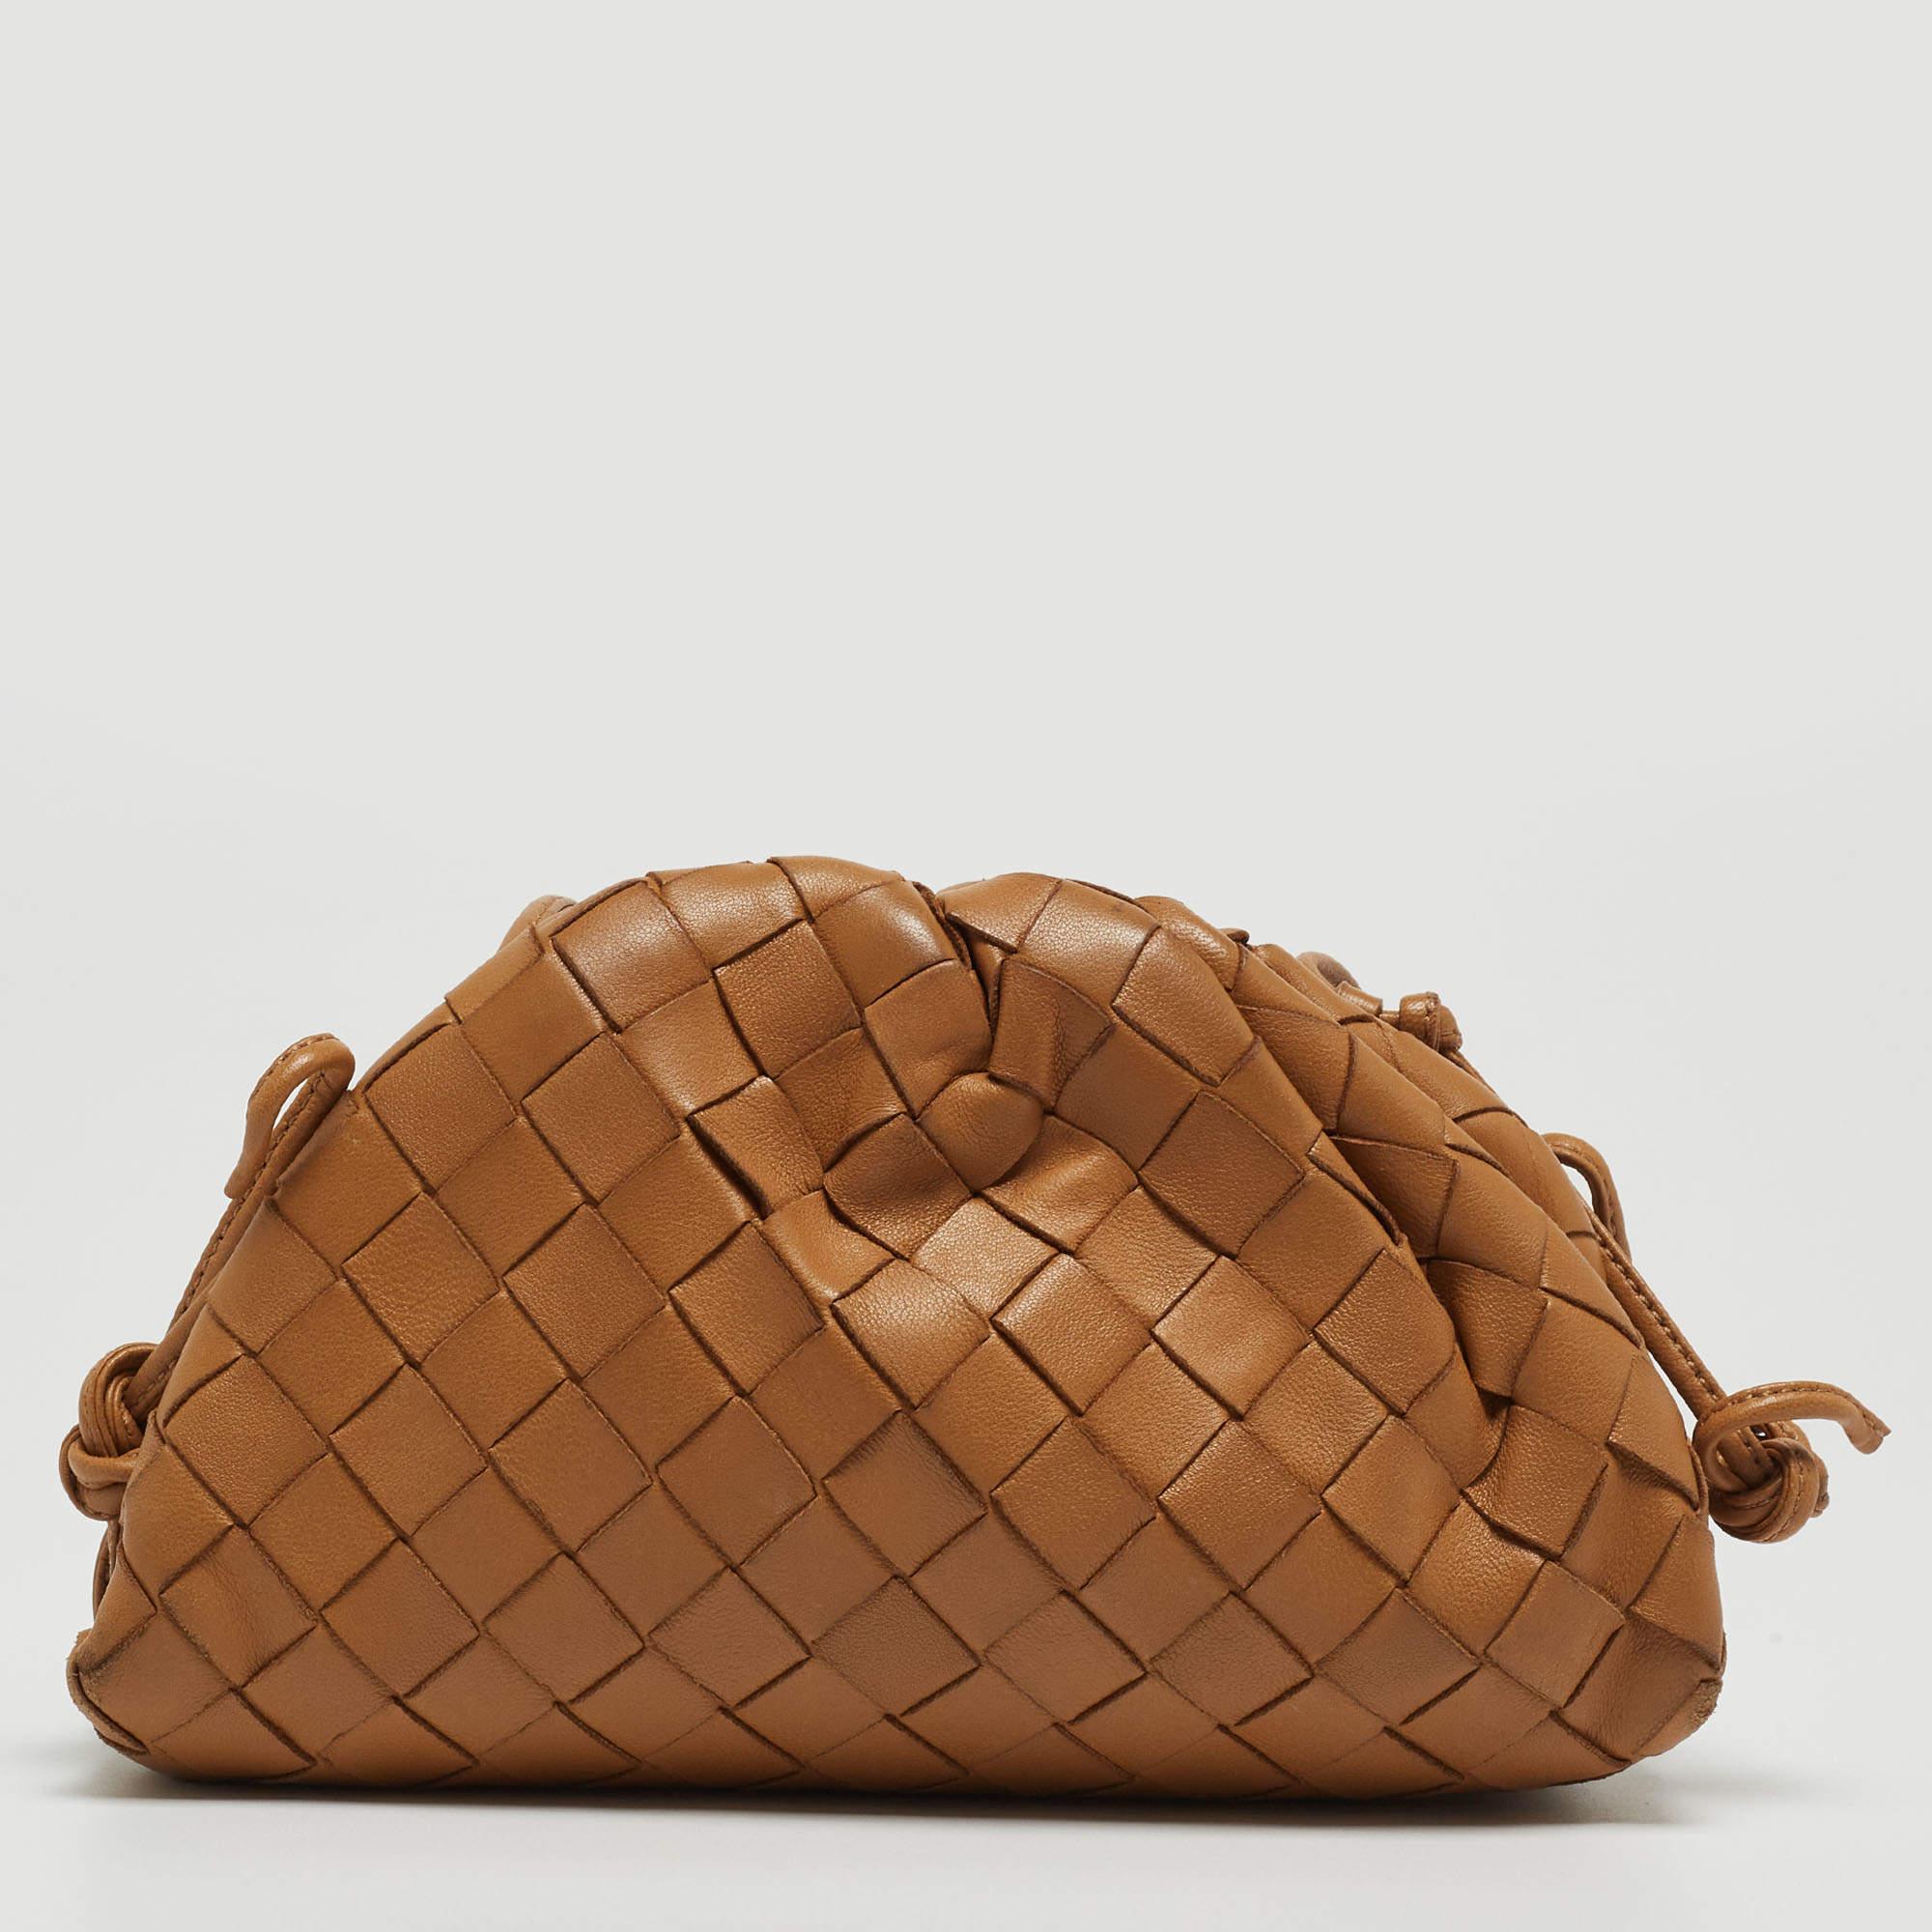 Erhöhen Sie Ihren Stil mit dieser Tasche von Bottega Veneta. Dieses exquisite Accessoire, das Form und Funktion miteinander verbindet, ist der Inbegriff von Raffinesse und sorgt dafür, dass Sie mit Eleganz und Zweckmäßigkeit an Ihrer Seite